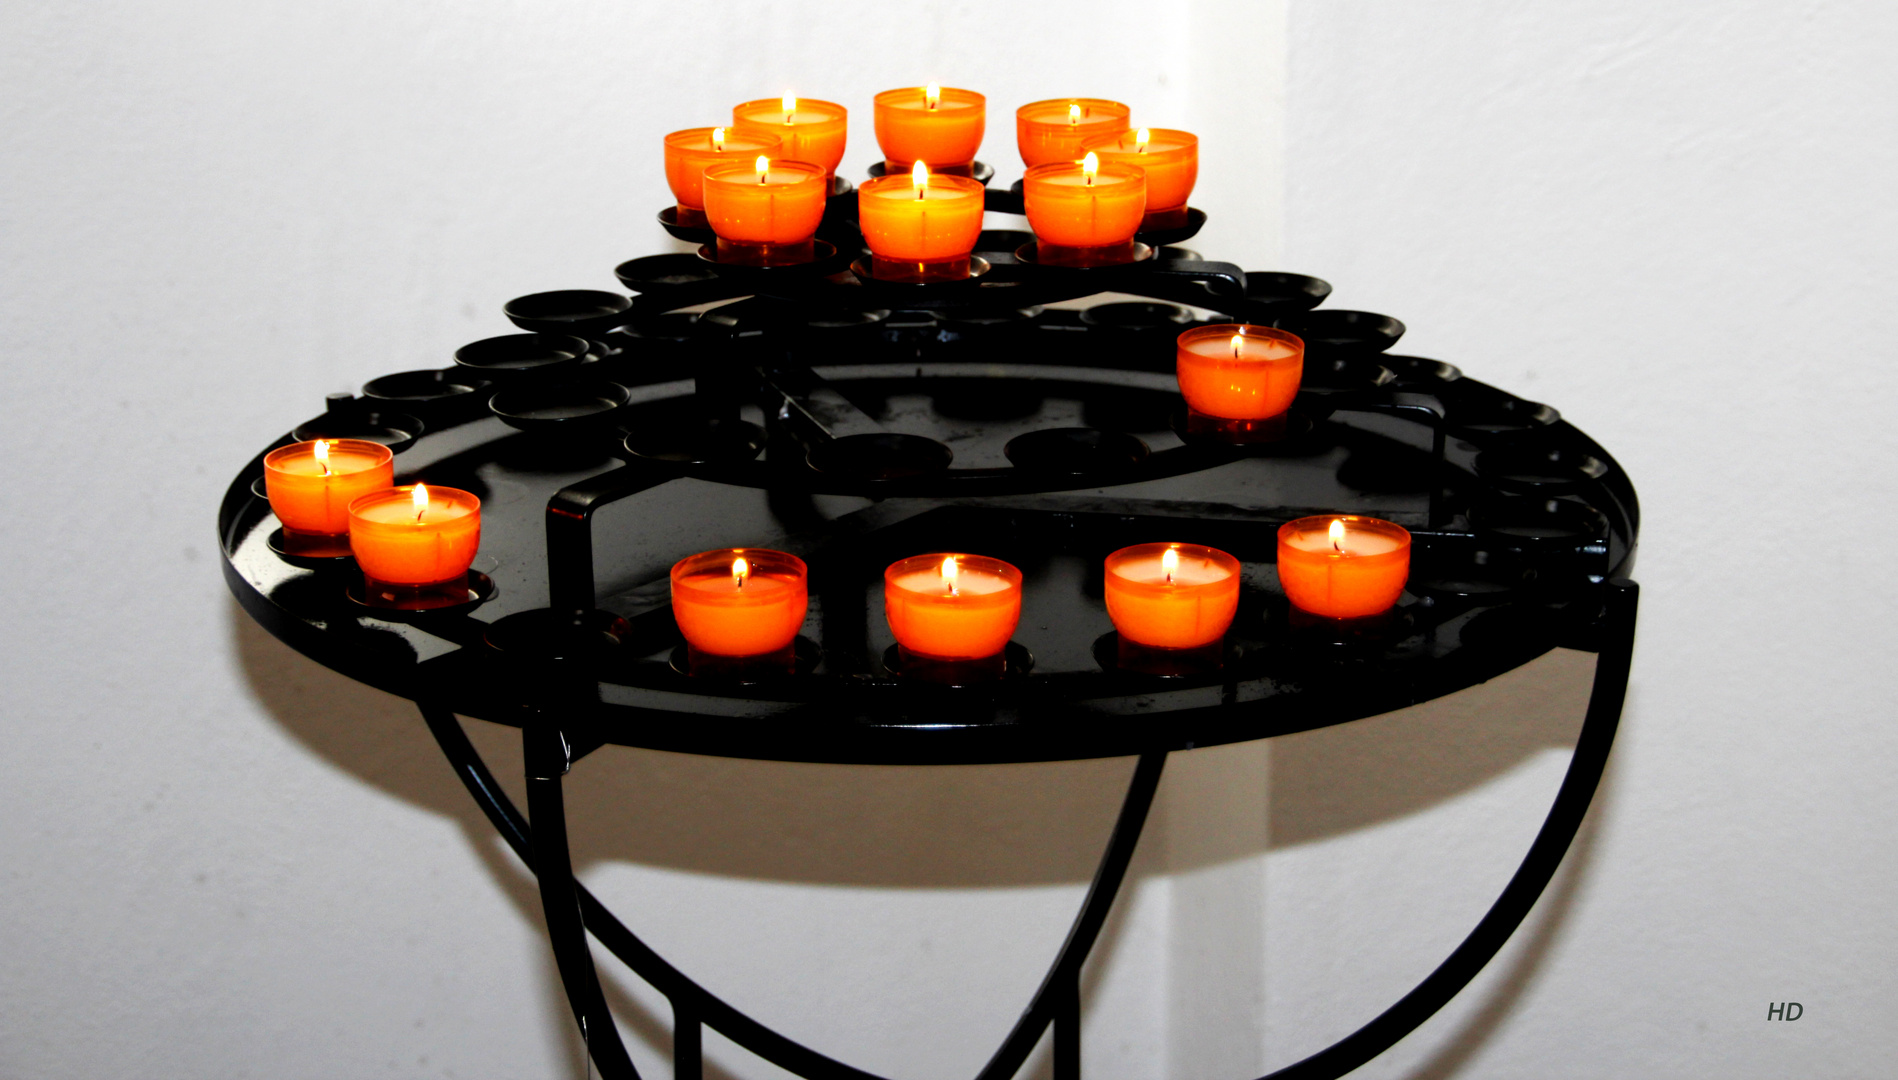 Kerzenständer